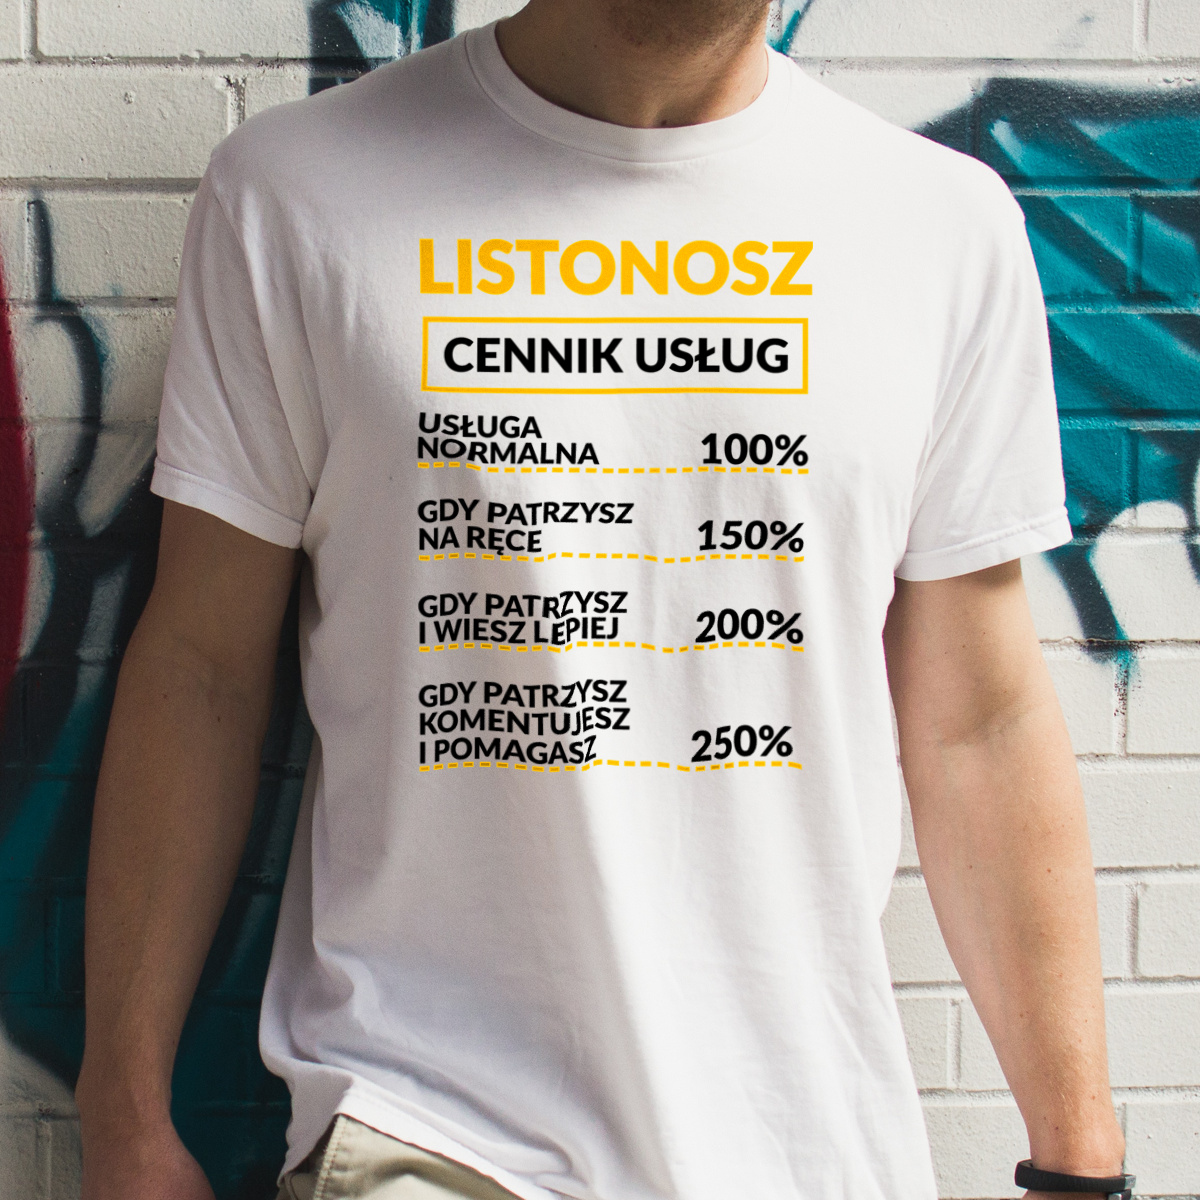 Listonosz - Cennik Usług - Męska Koszulka Biała